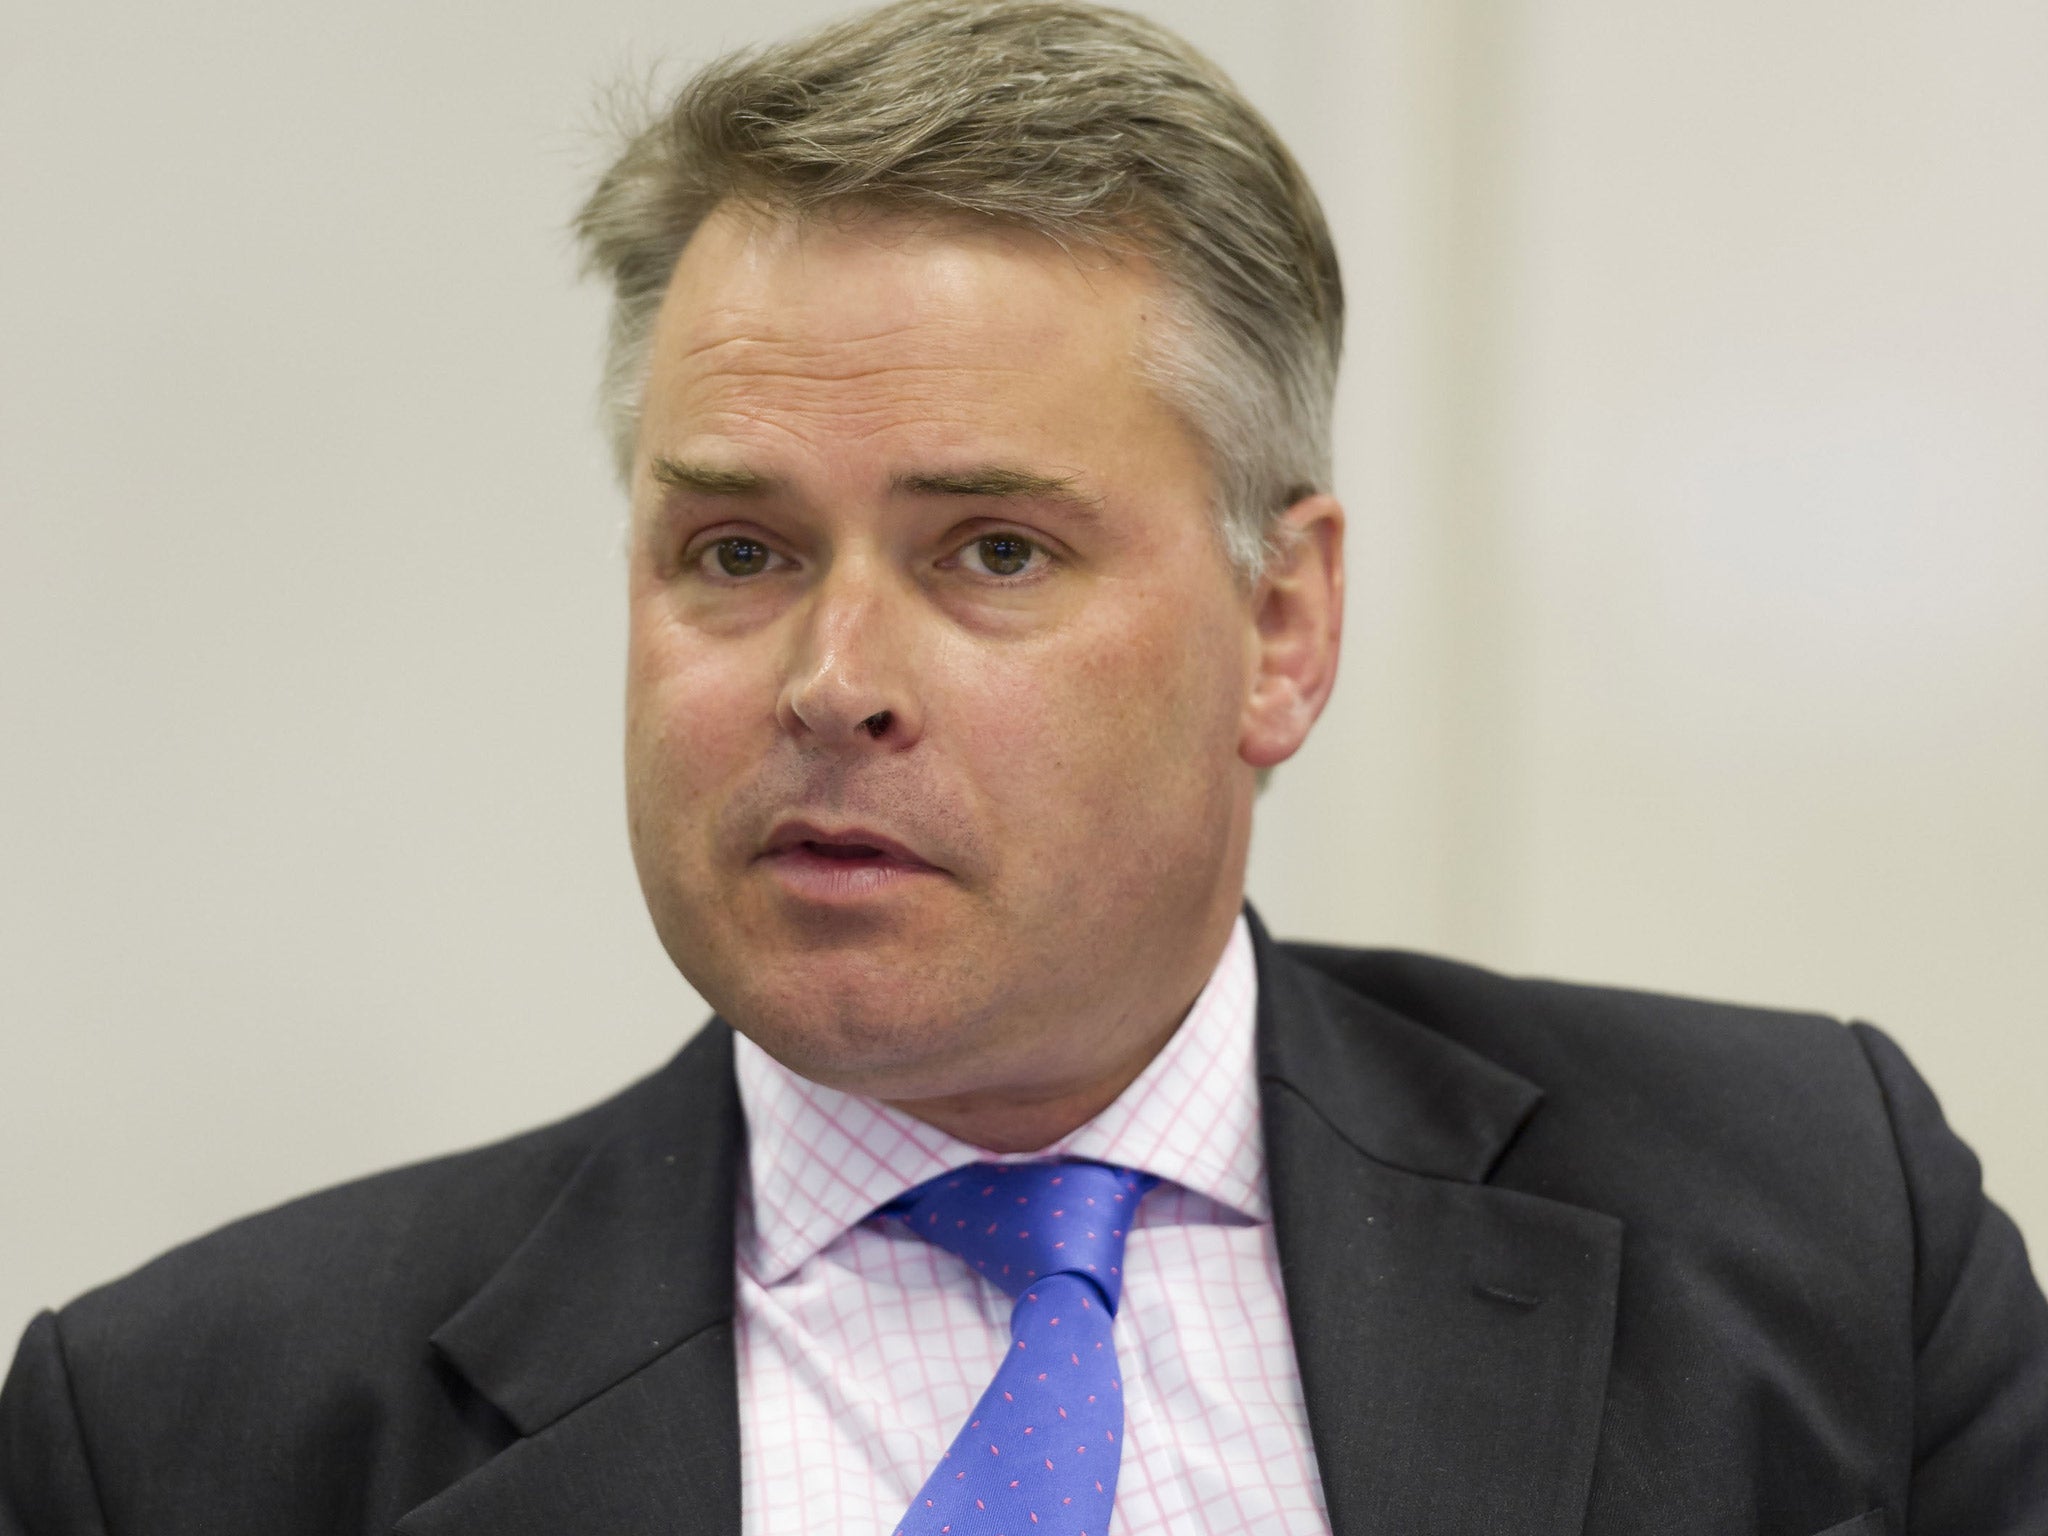 Former Conservative Children's Minister, Tim Loughton